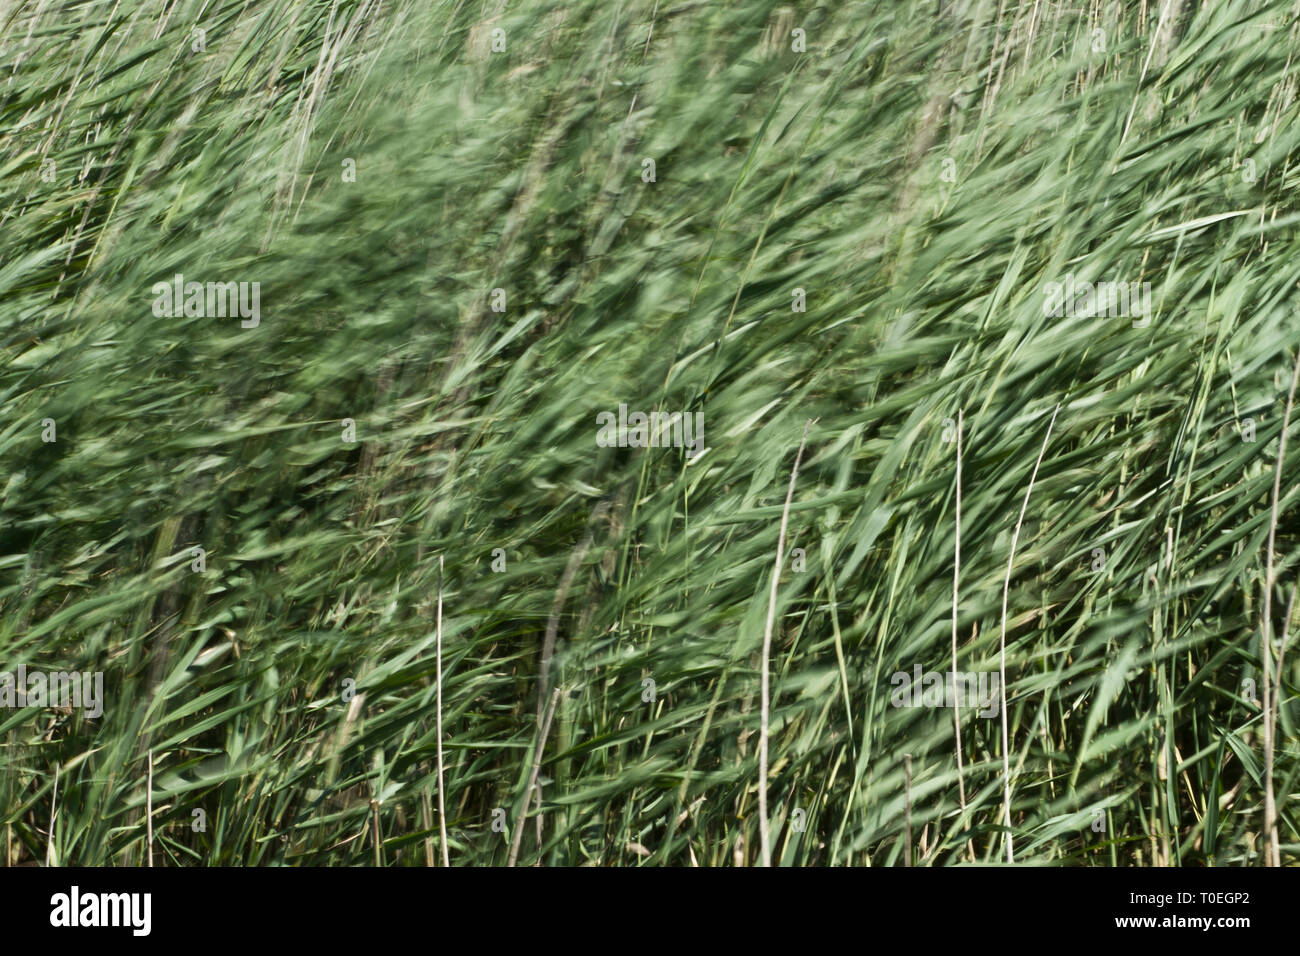 Abstrakte Sicht von reeds weht im Wind, Westhay Moor SWT finden, Somerset Levels, Somerset, England, Großbritannien Stockfoto